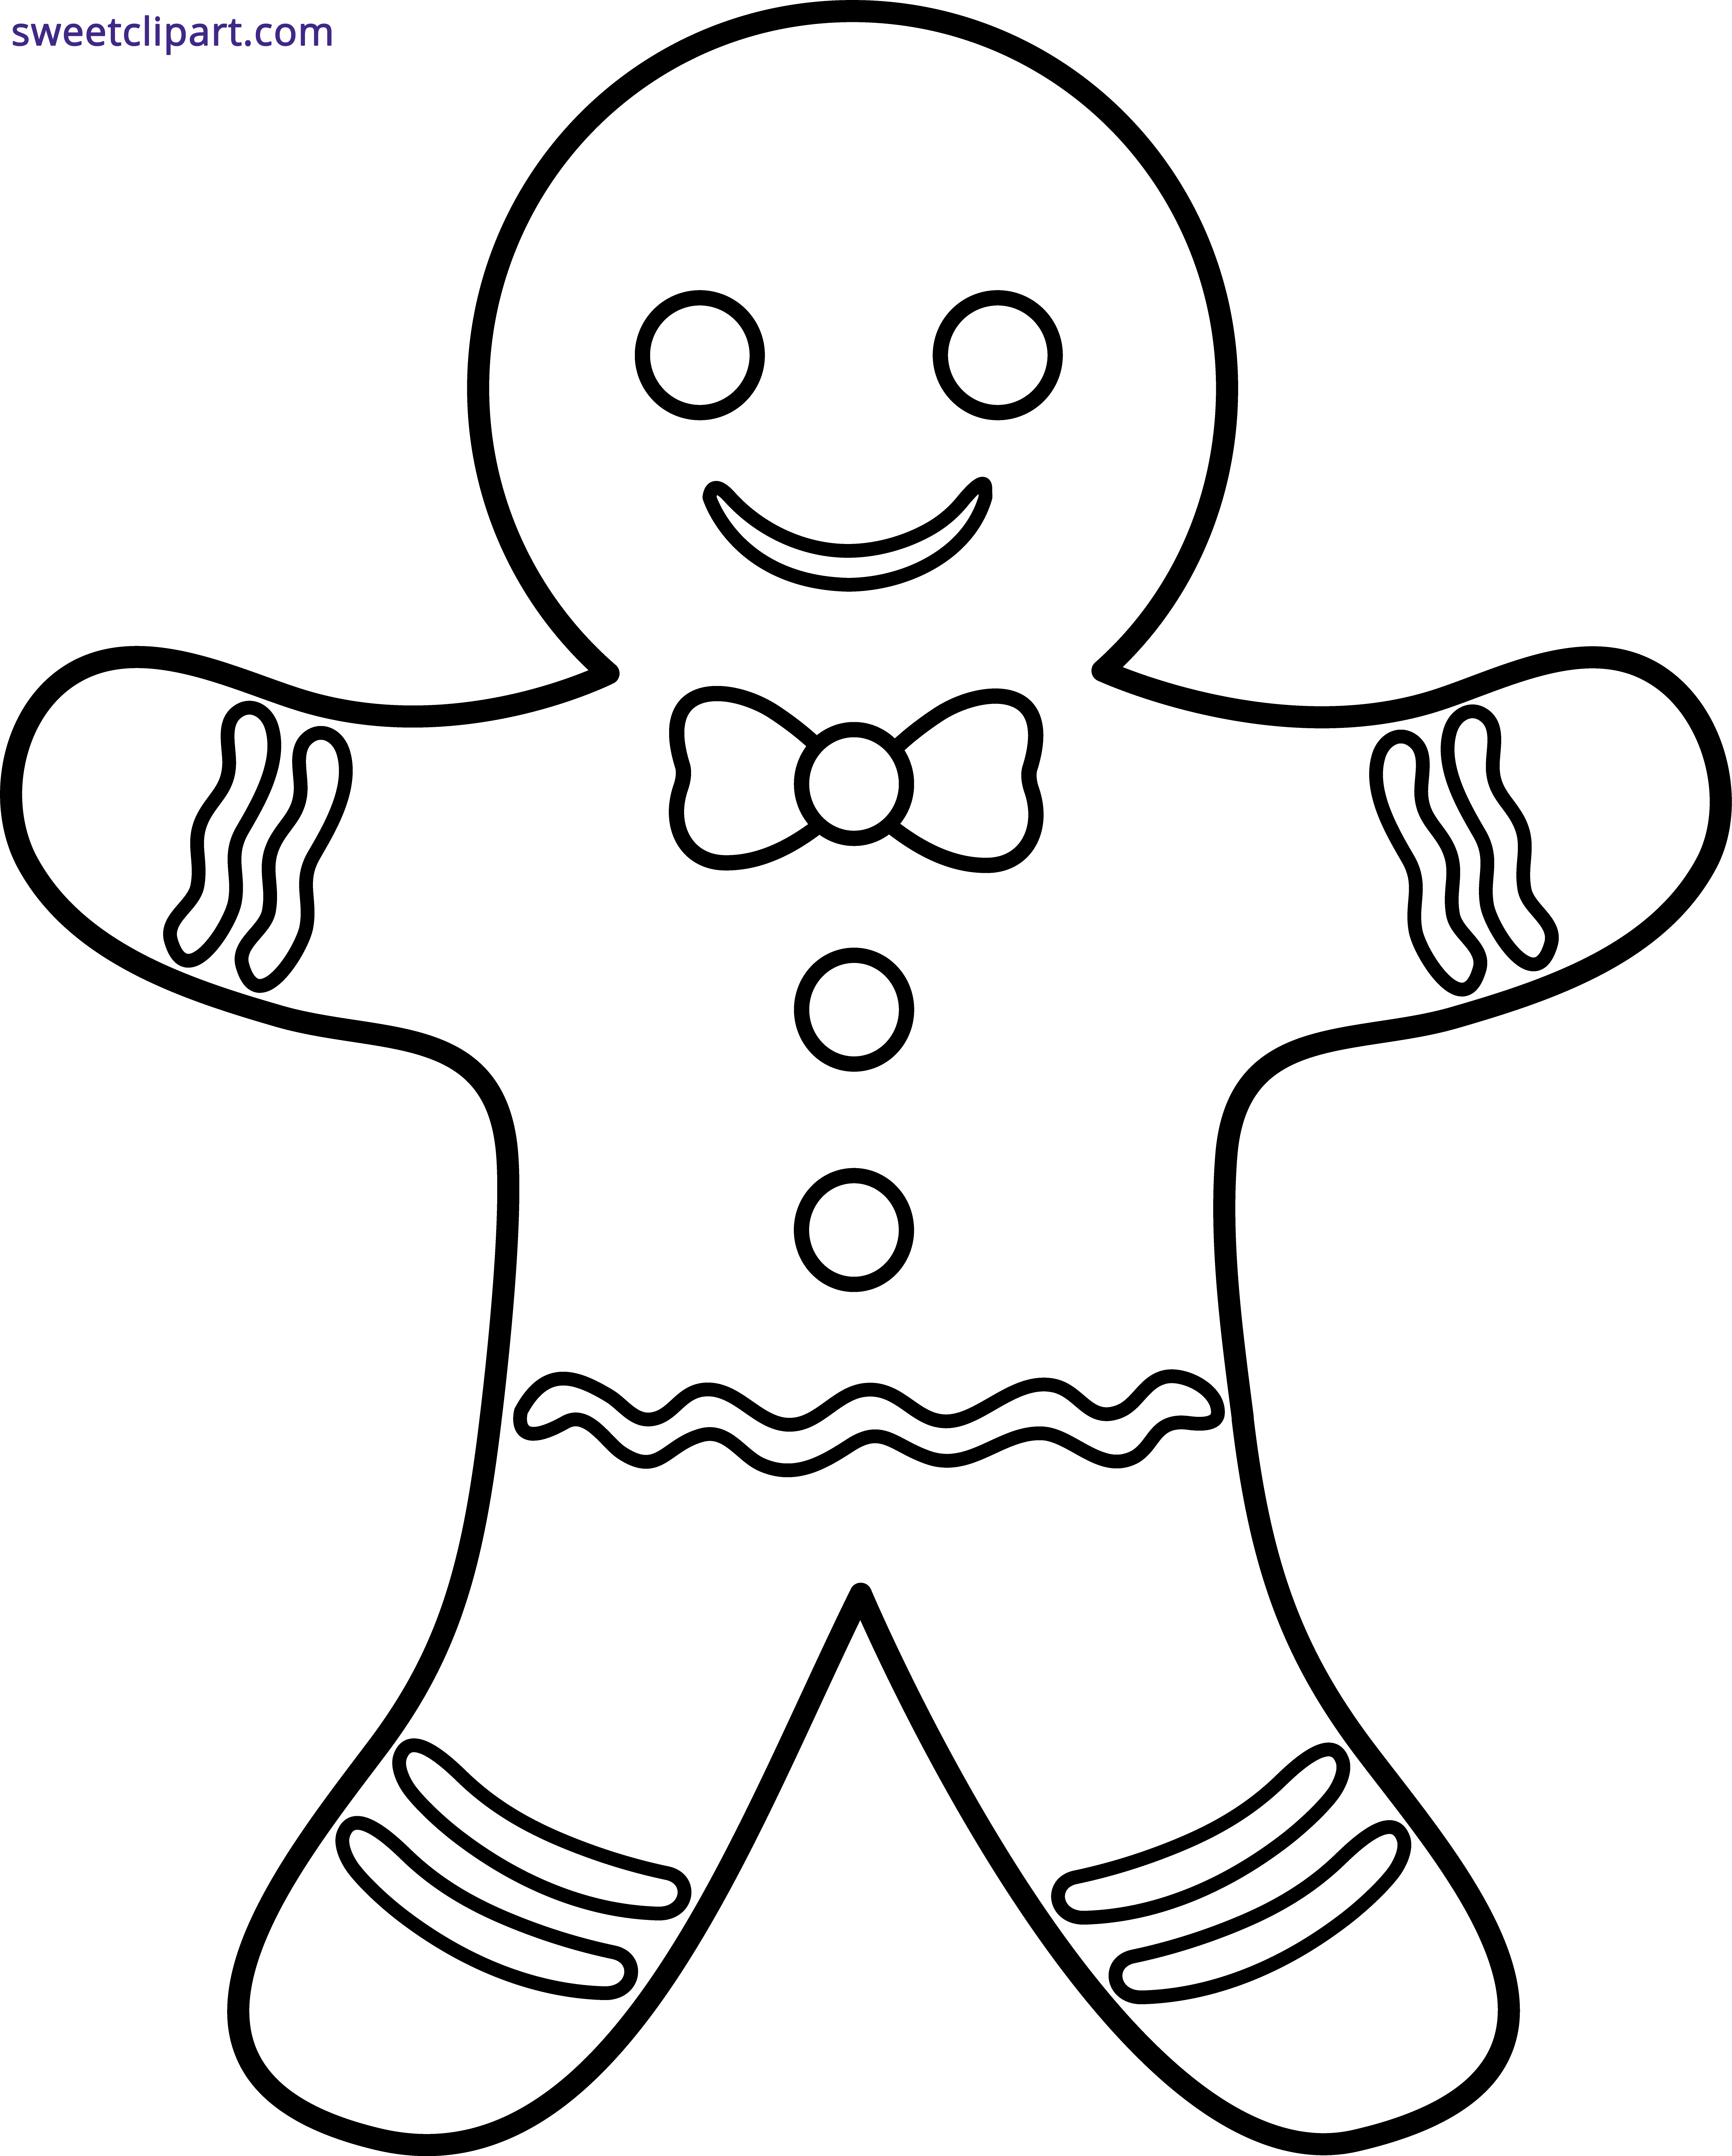 Gingerbread man outline.